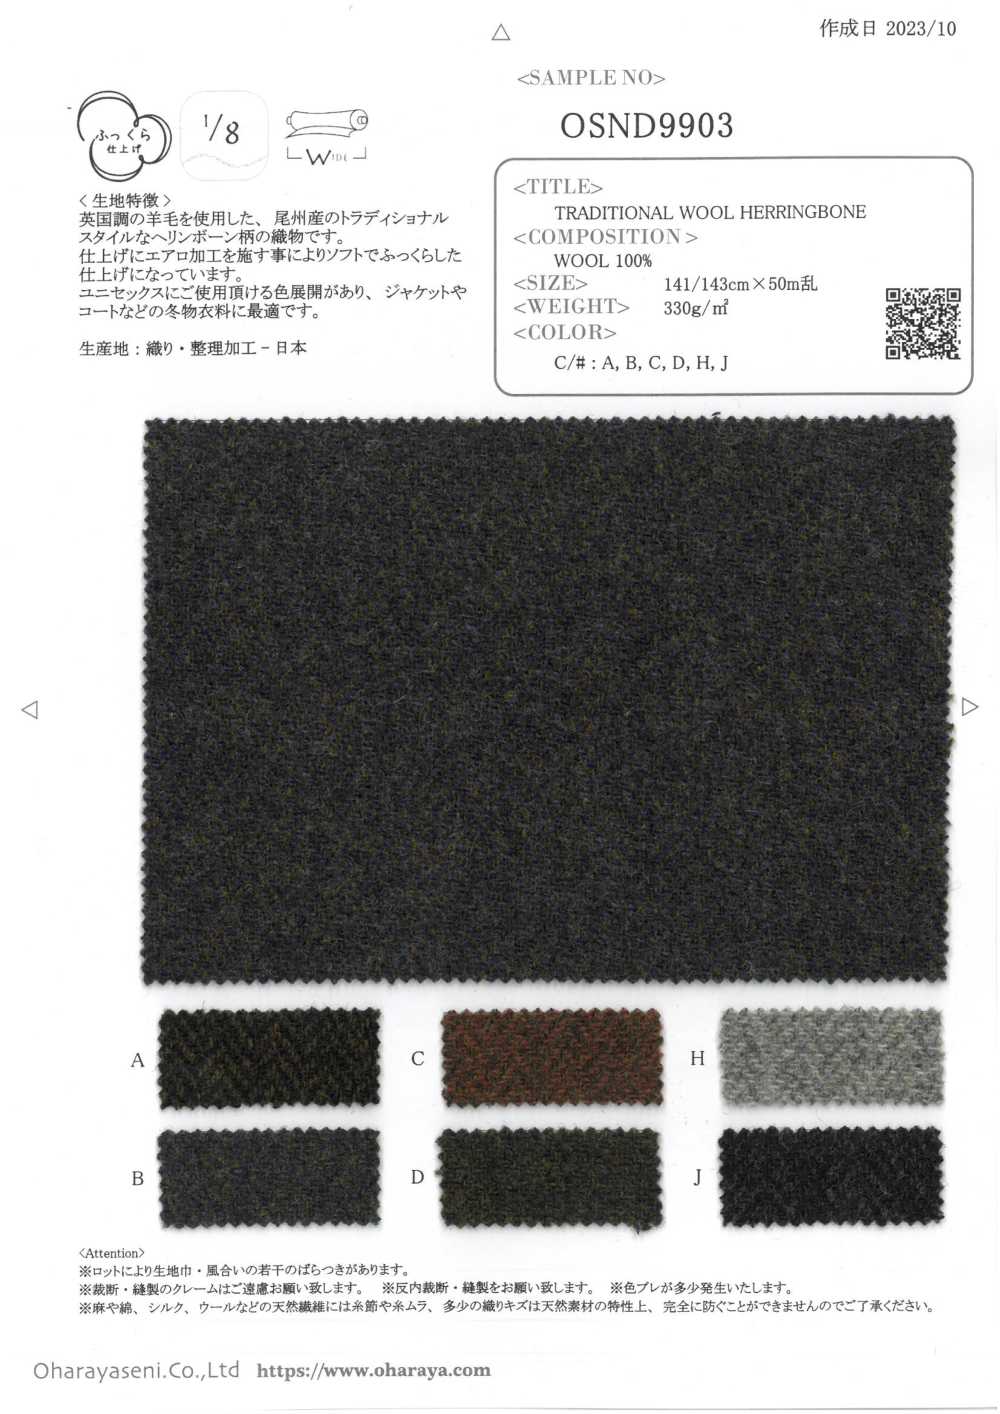 OSND9903 ESPIGA DE LANA TRADICIONAL[Fabrica Textil] Oharayaseni